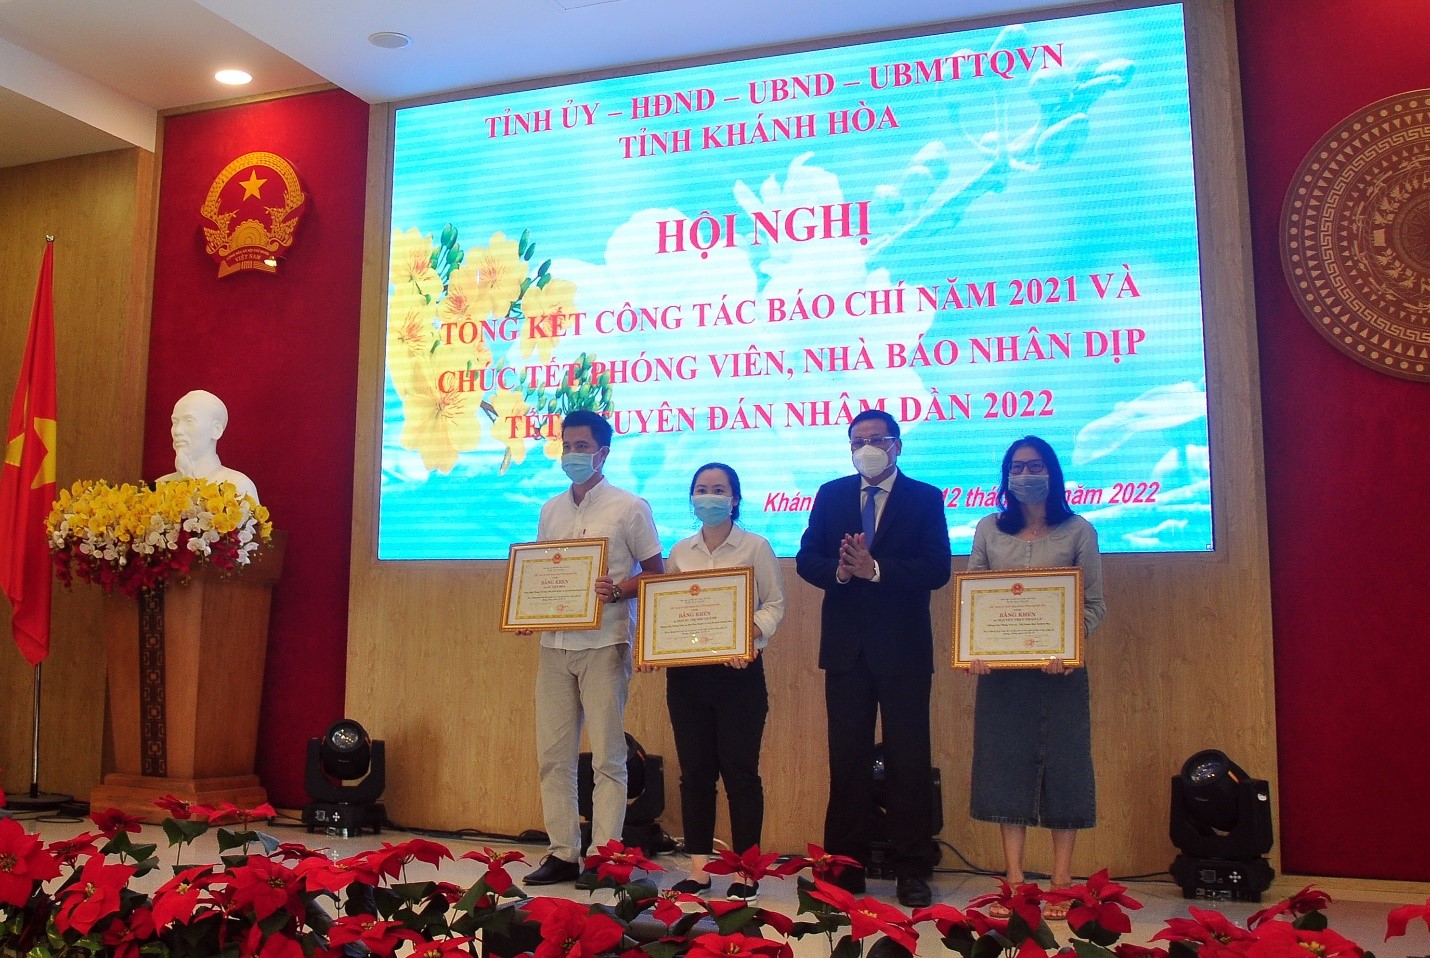 Ông Lê Hữu Thọ, UV TV, Trưởng Ban Tuyên Giáo Tỉnh Ủy, trao tặng bằng khen của UBND tỉnh Khánh Hòa cho các cá nhân có thành tích xuất sắc trong công tác truyền thông báo chí về phòng chống COVID – 19. 